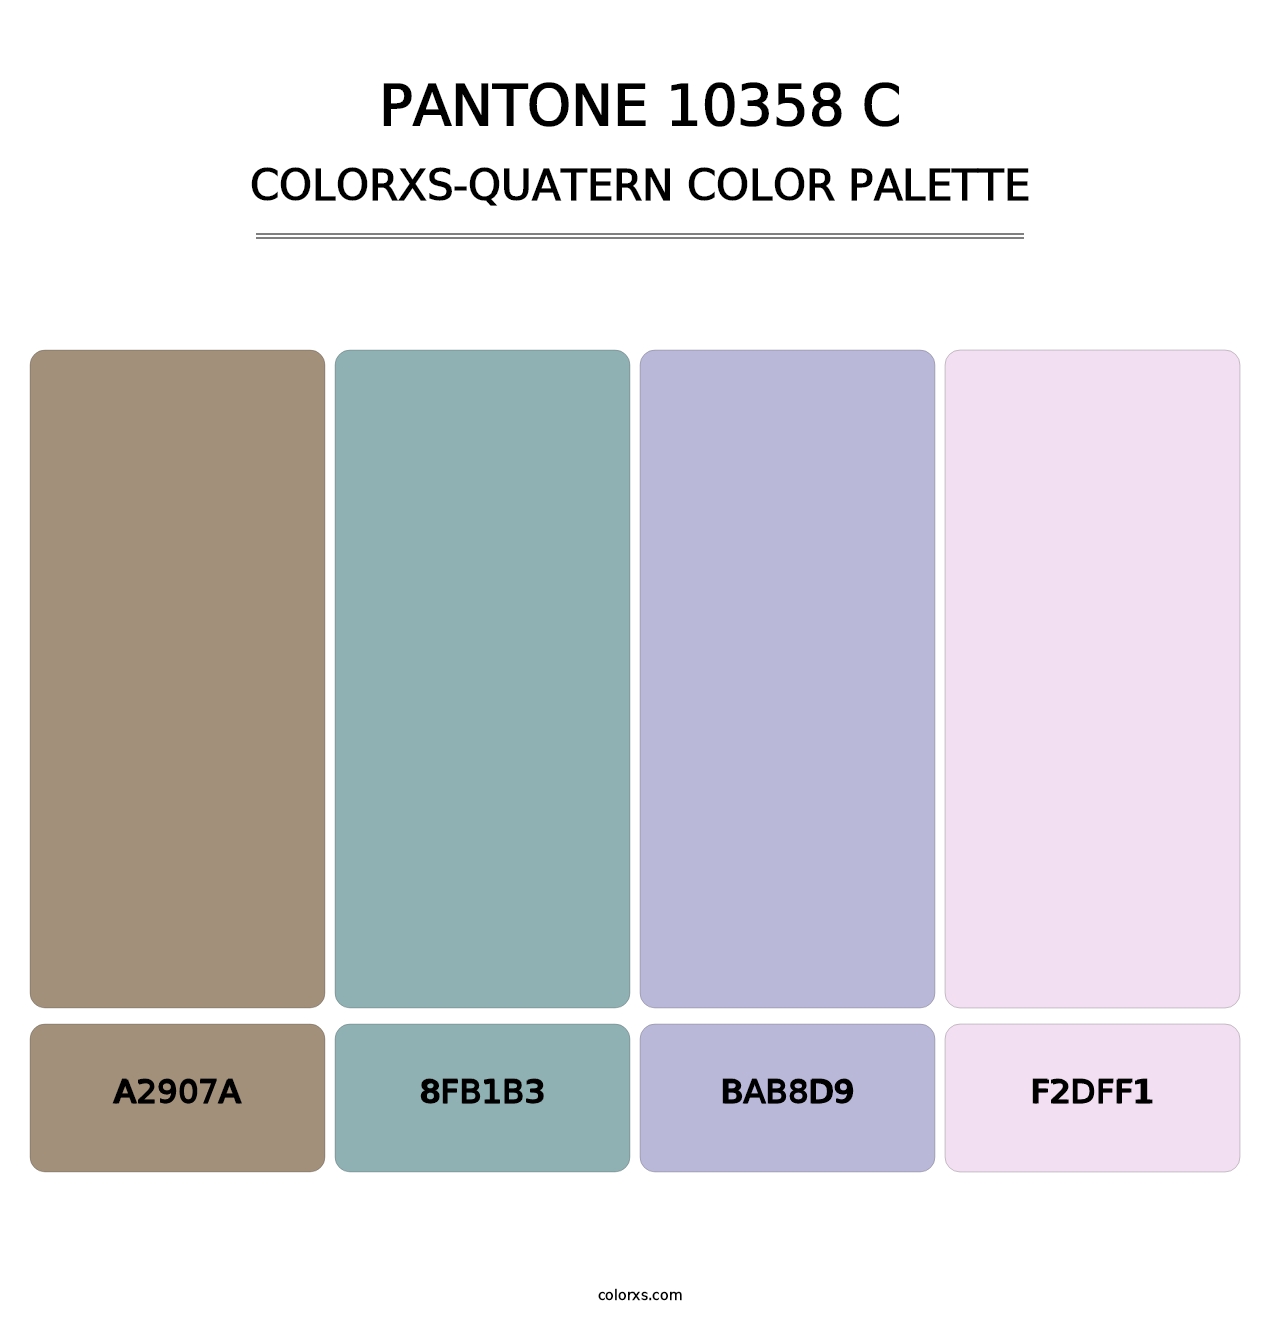 PANTONE 10358 C - Colorxs Quatern Palette